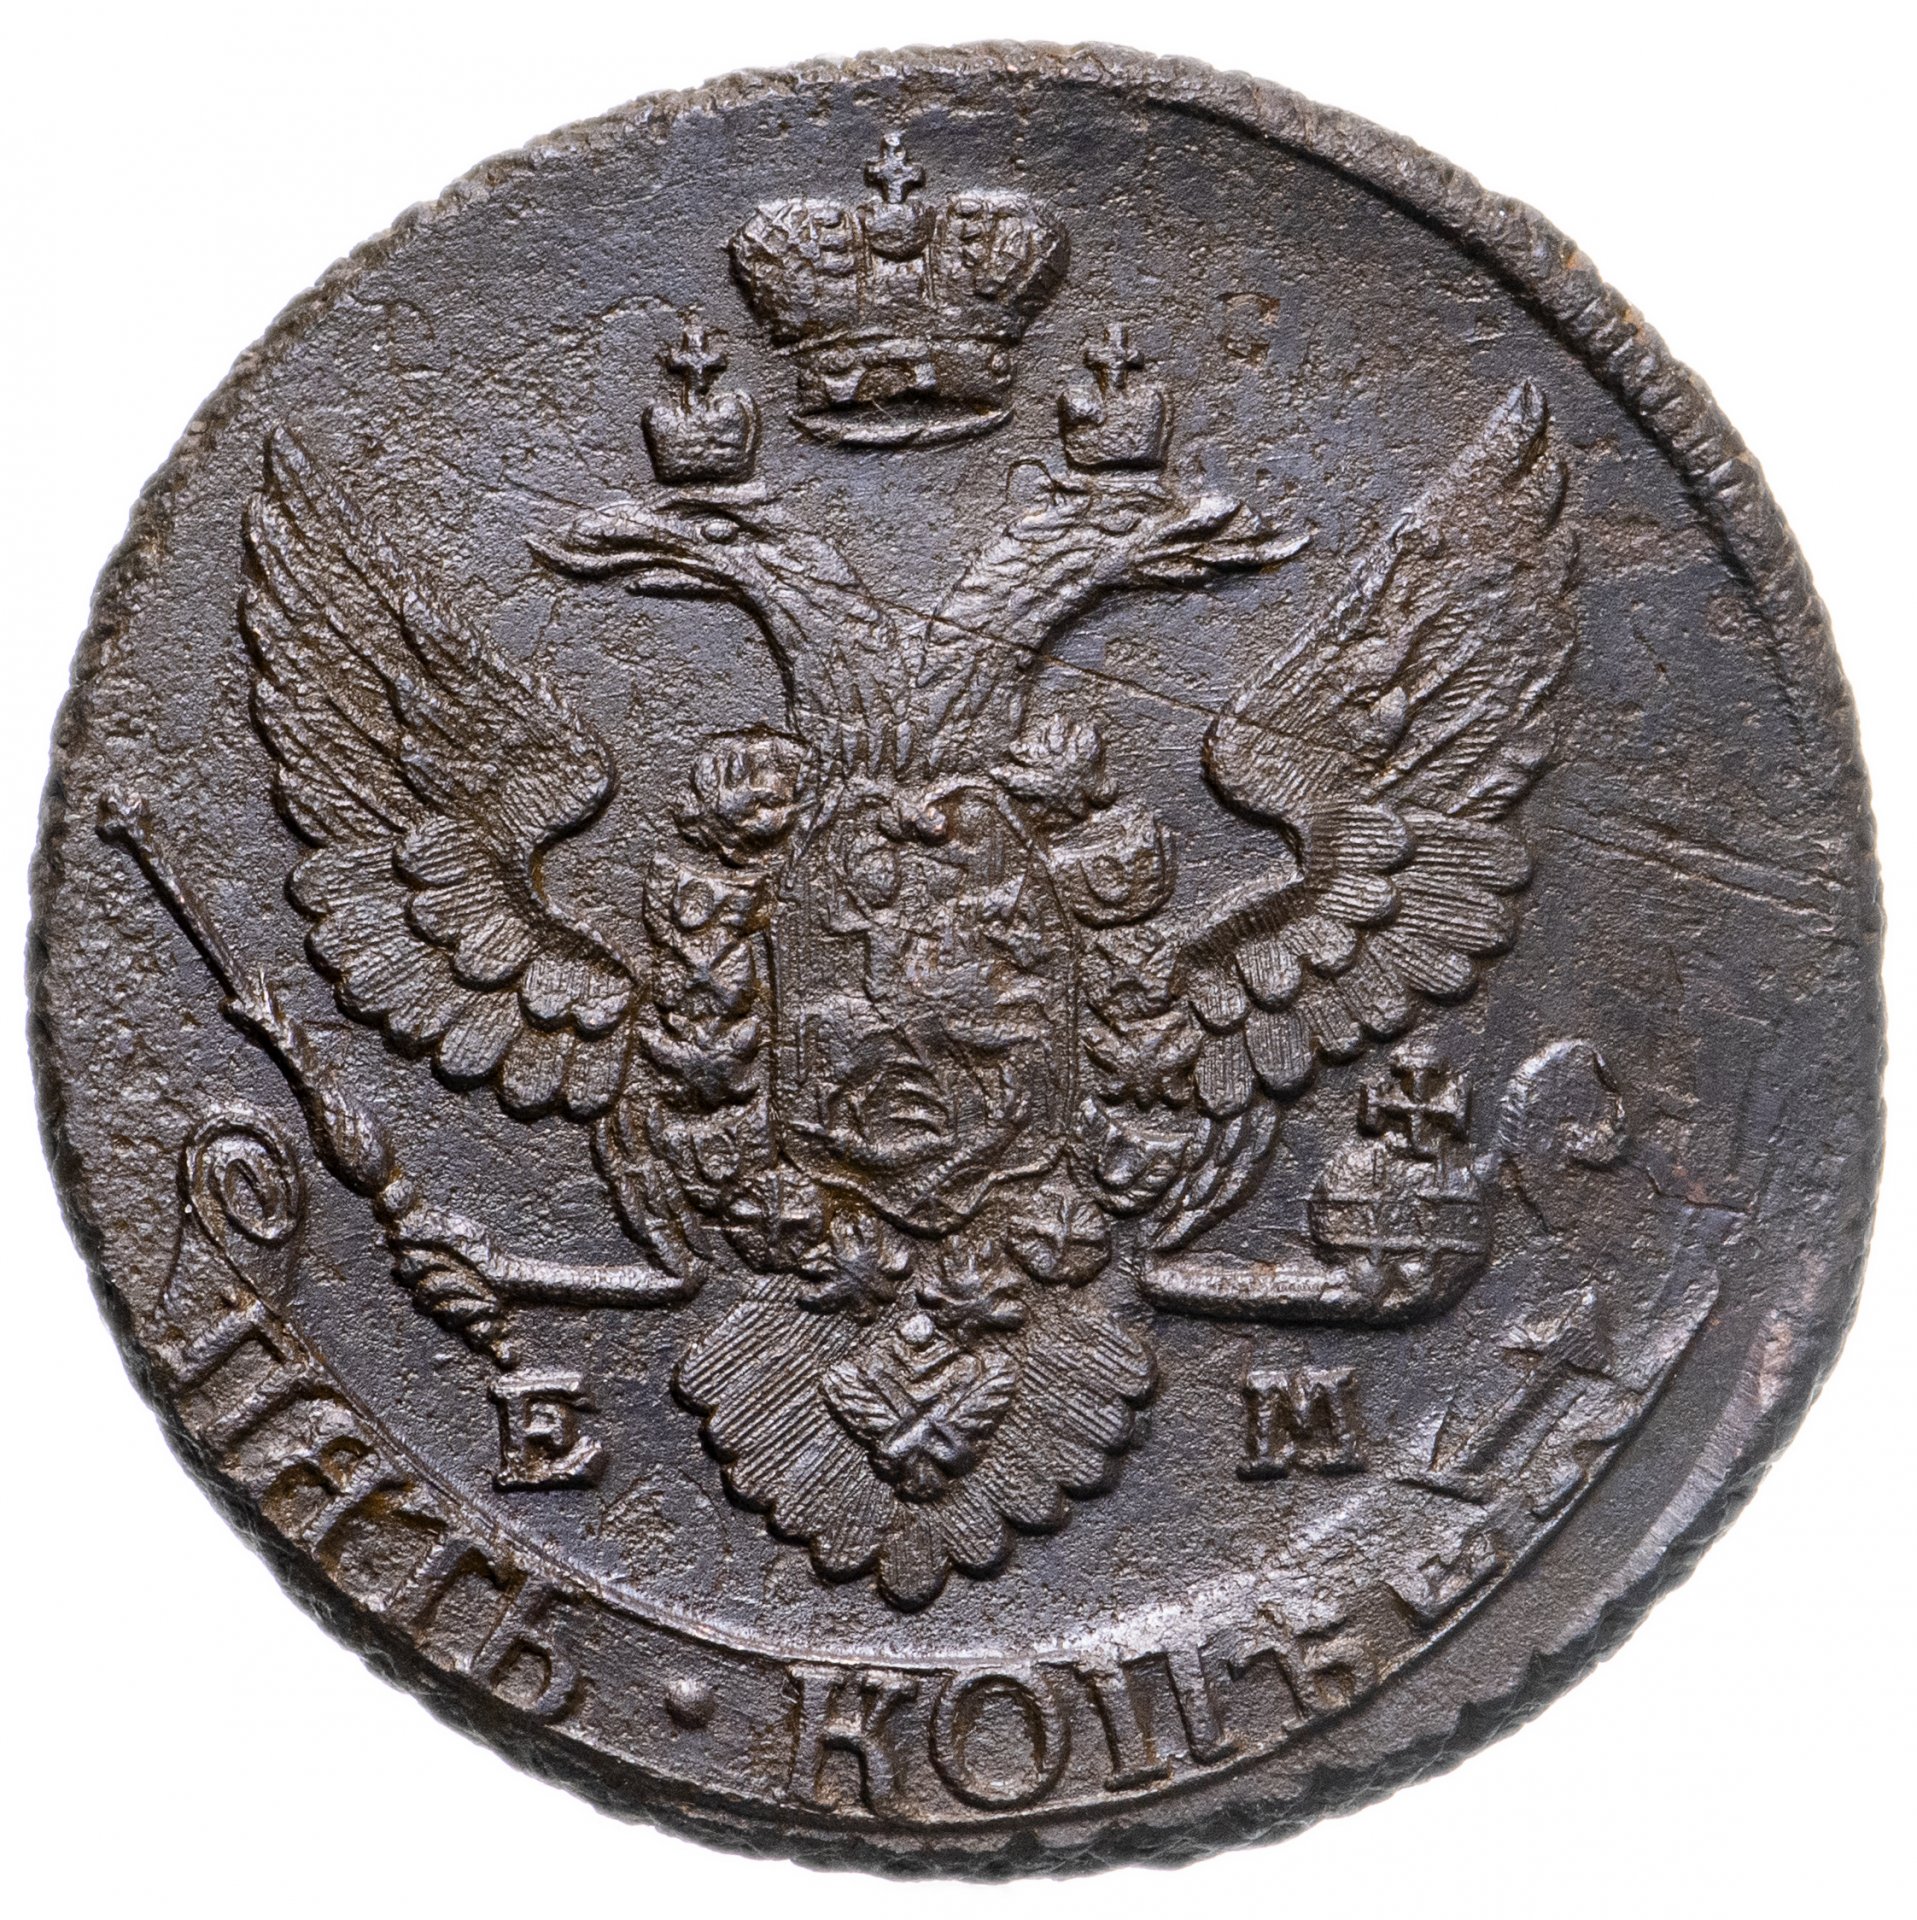 5 копеек перечекан. 5 Копеек 1796 ем Павловский перечекан. Павловский перечекан монет 1796 года.